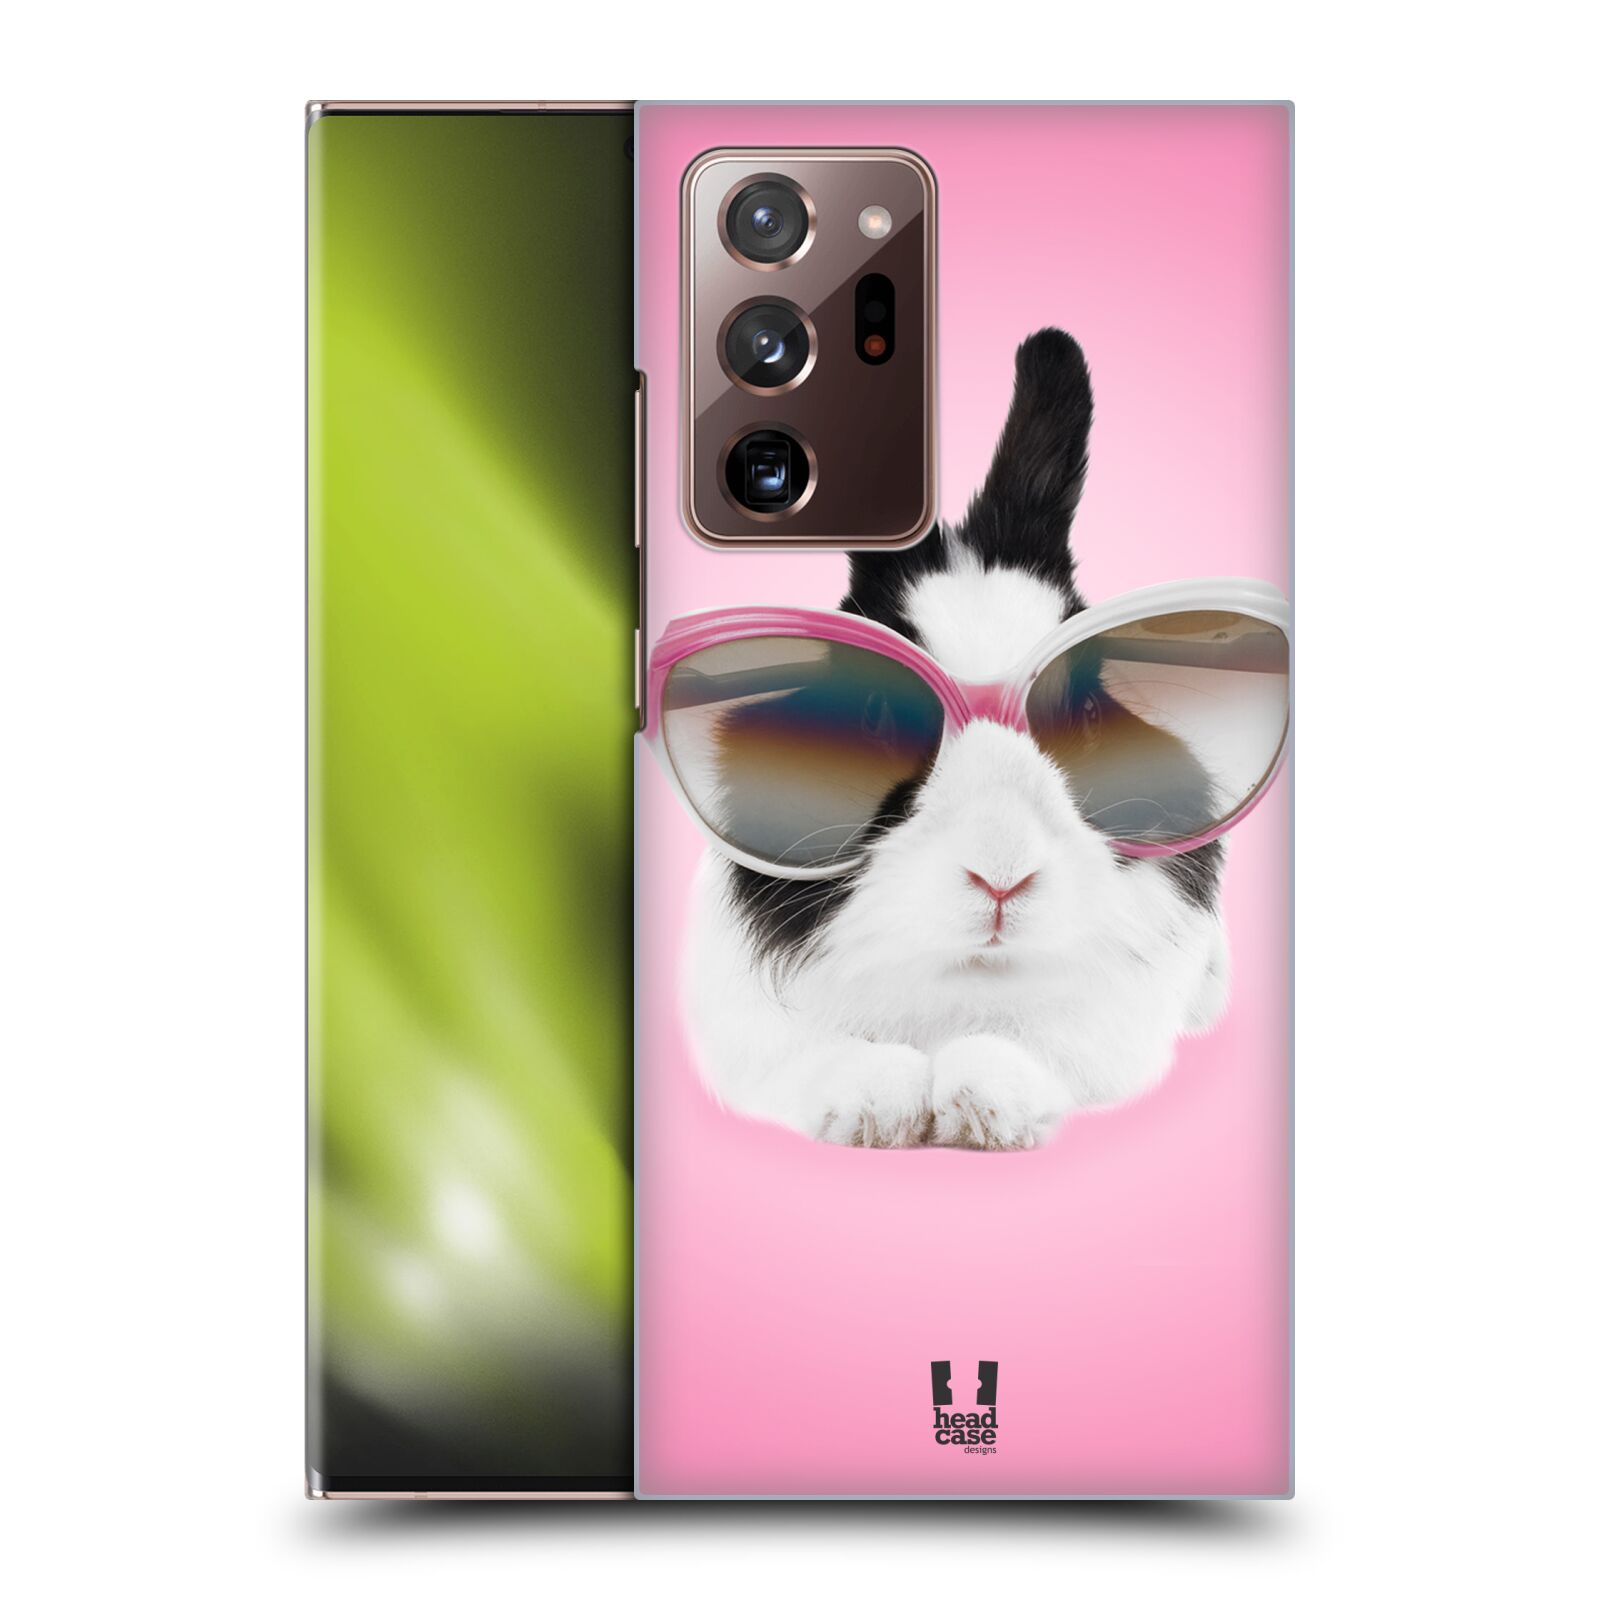 Plastový obal HEAD CASE na mobil Samsung Galaxy Note 20 ULTRA vzor Legrační zvířátka roztomilý králíček s brýlemi růžová